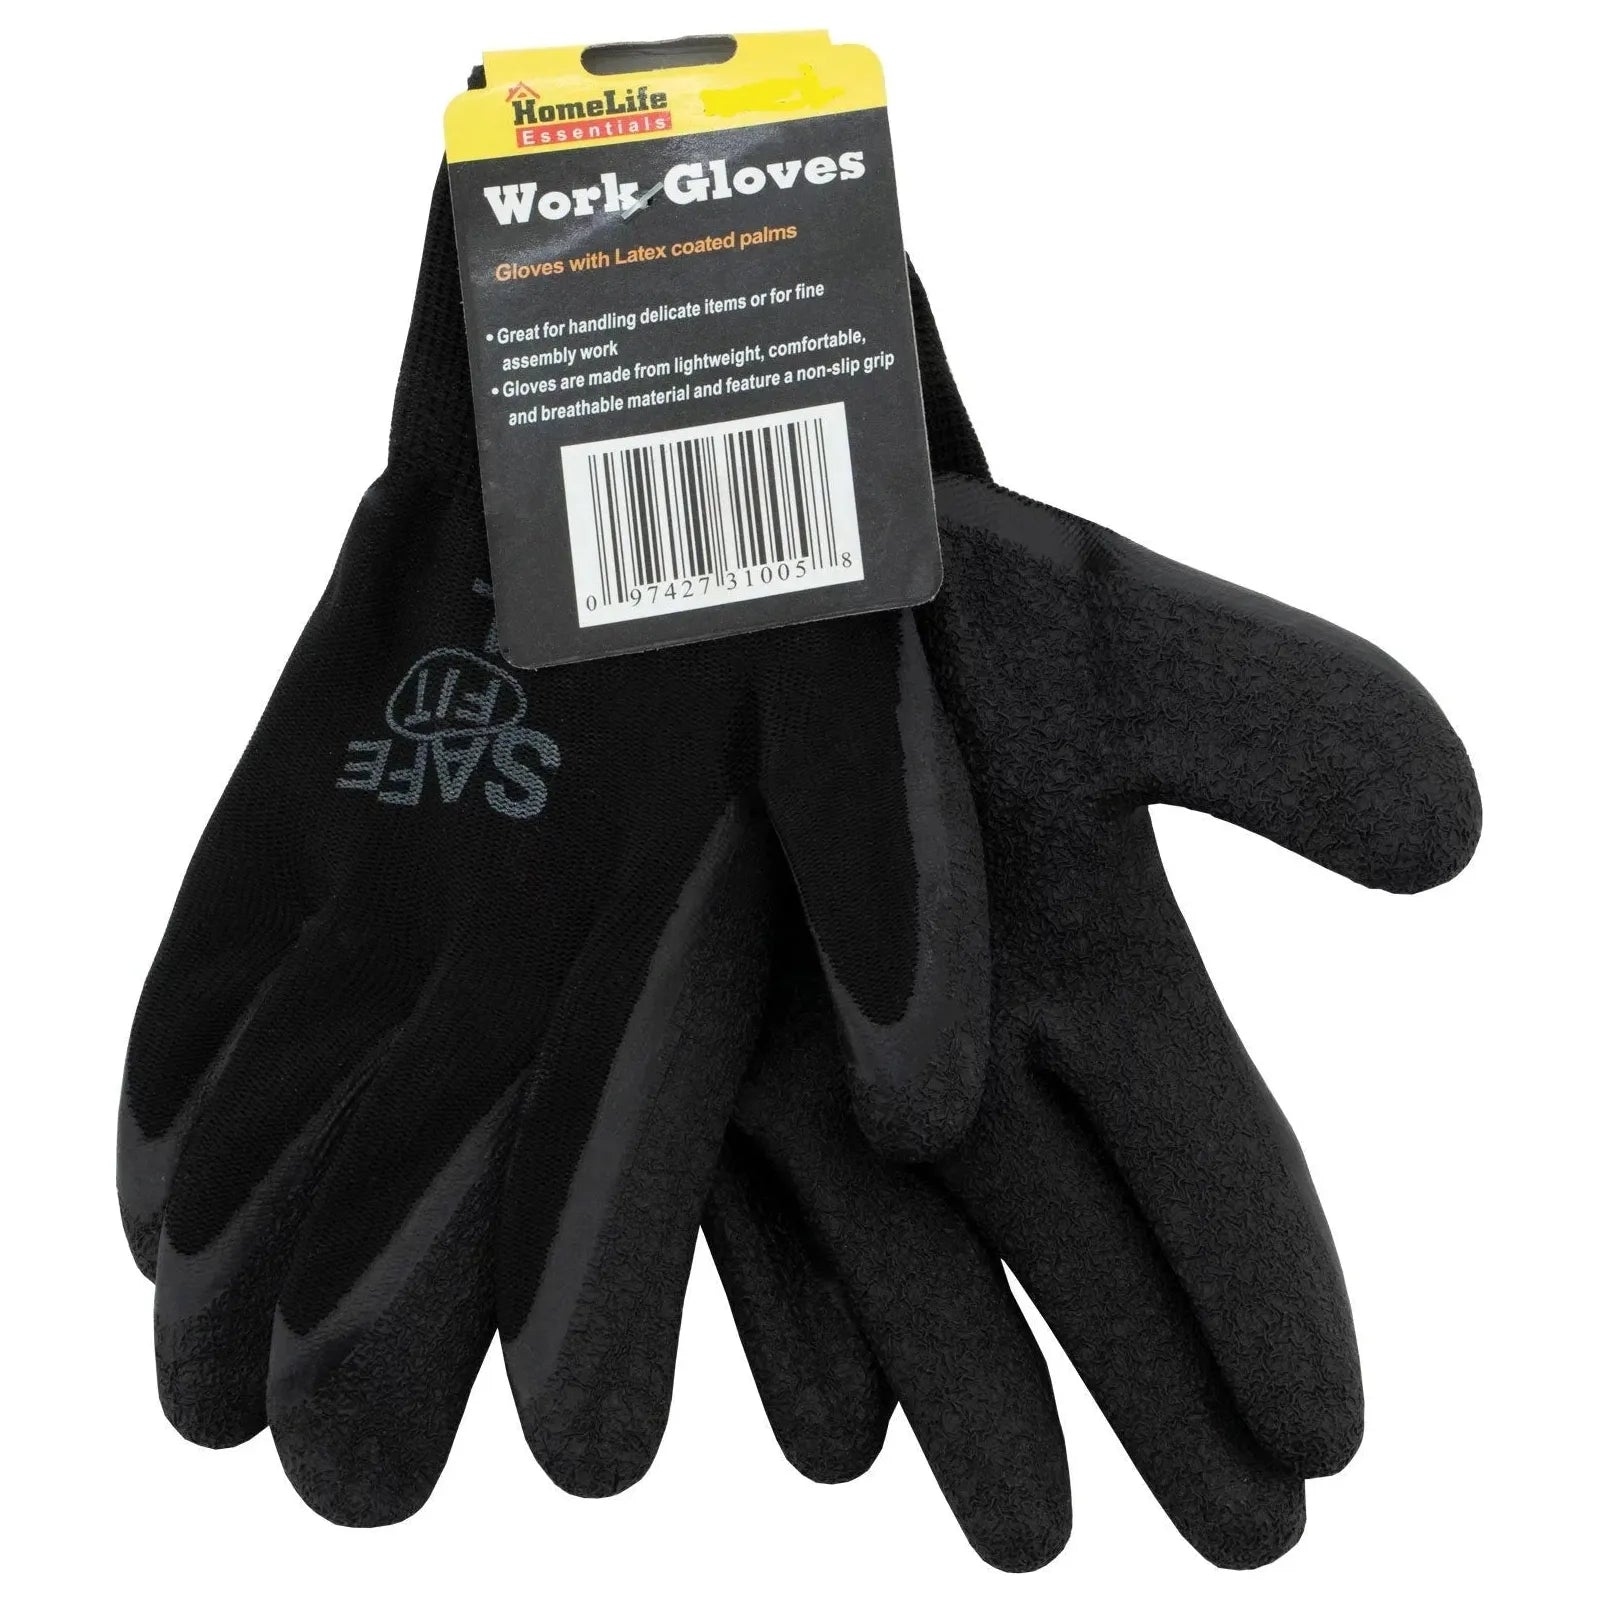 Home Life Essentials Work Gloves